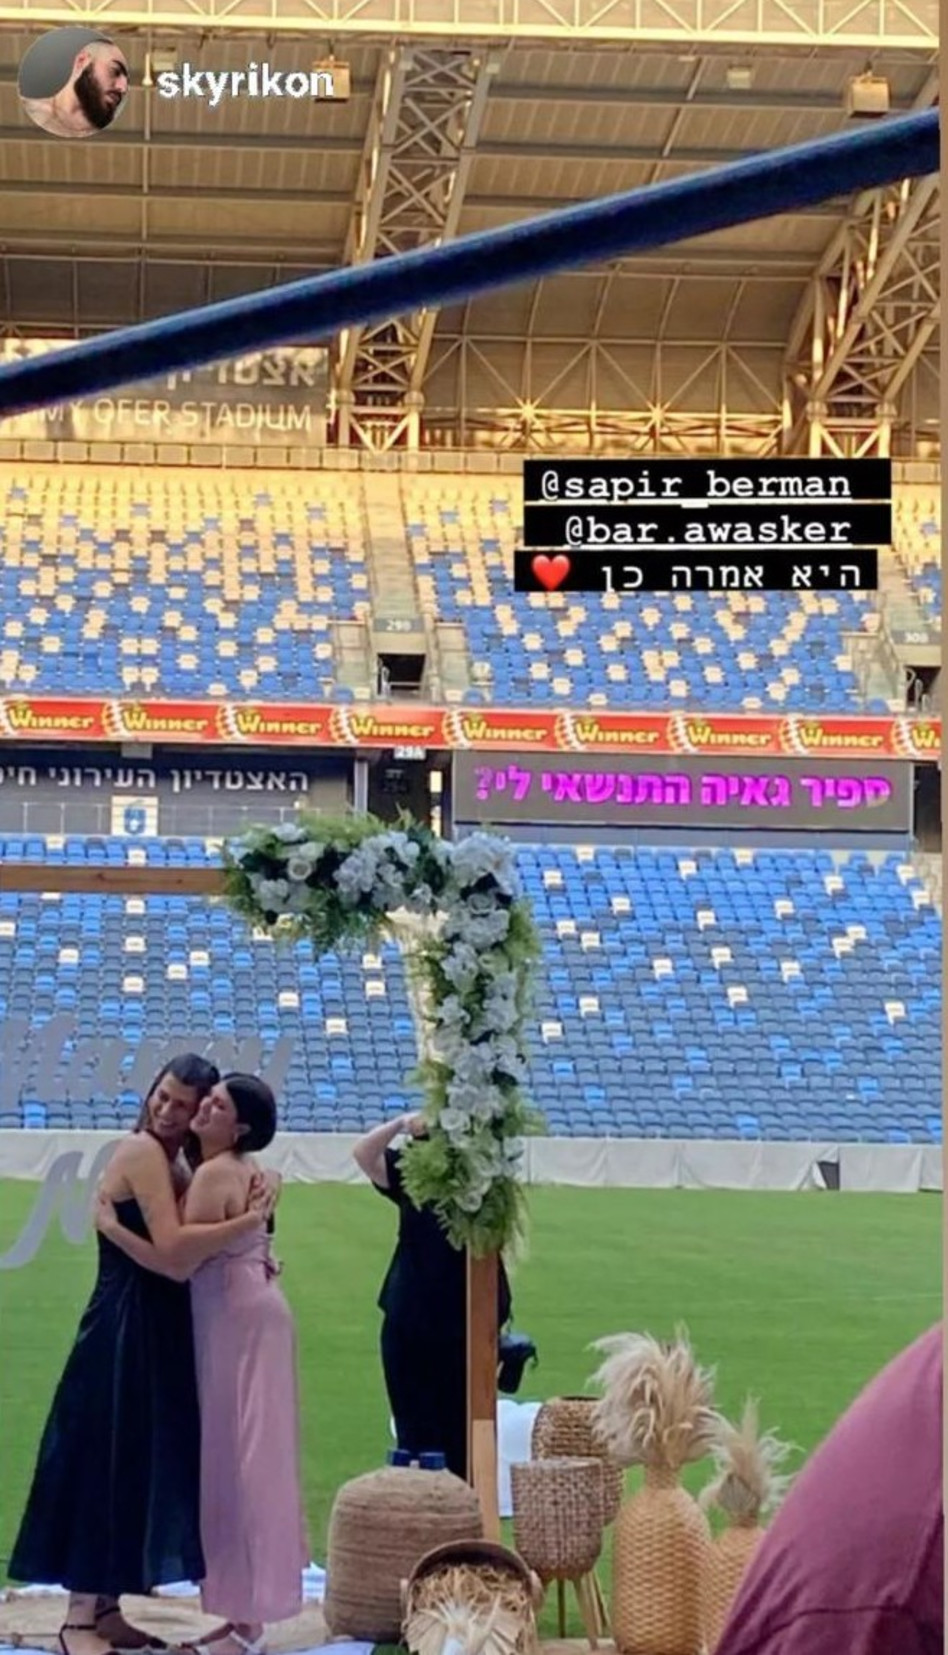 הצעת הנישואין של בר אווסקר לספיר ברגמן באצטדיון סמי עופר בחיפה (צילום: צילום מתוך עמוד האינסטגרם skyrikon)